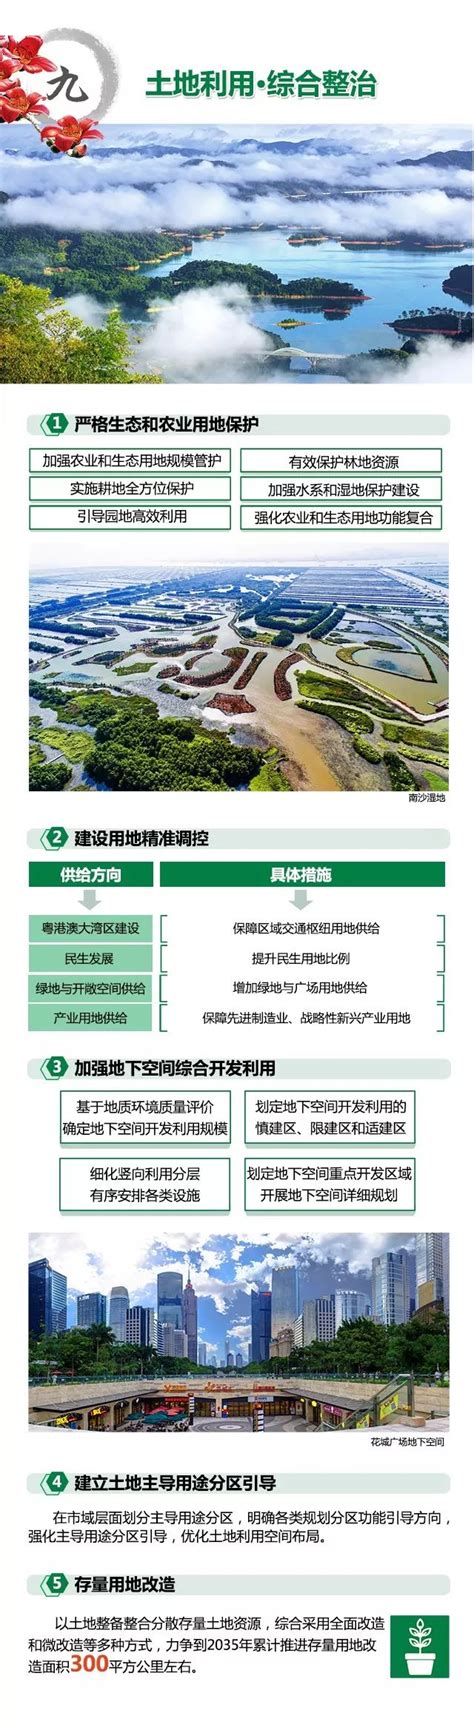 南沙基础设施及产业布局(图)-搜狐新闻